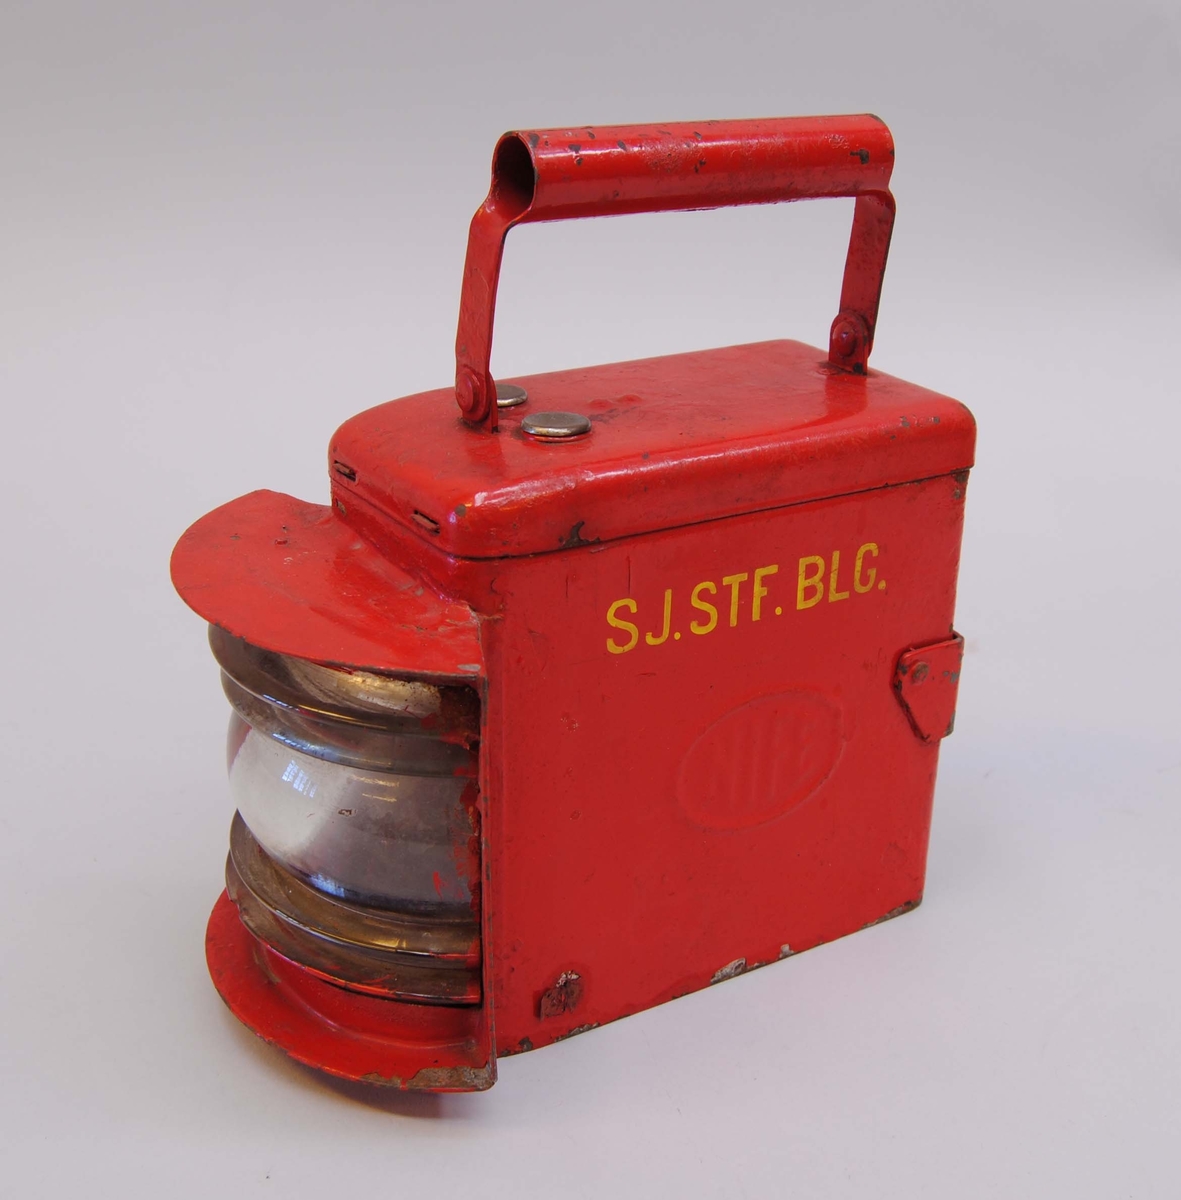 Röd batteridriven signallykta märkt "SJ. STF. BLG." med gult. På sidorna står det "NIFE" i plåten. På ovansidan finns ett handtag och på baksidan en hållare.